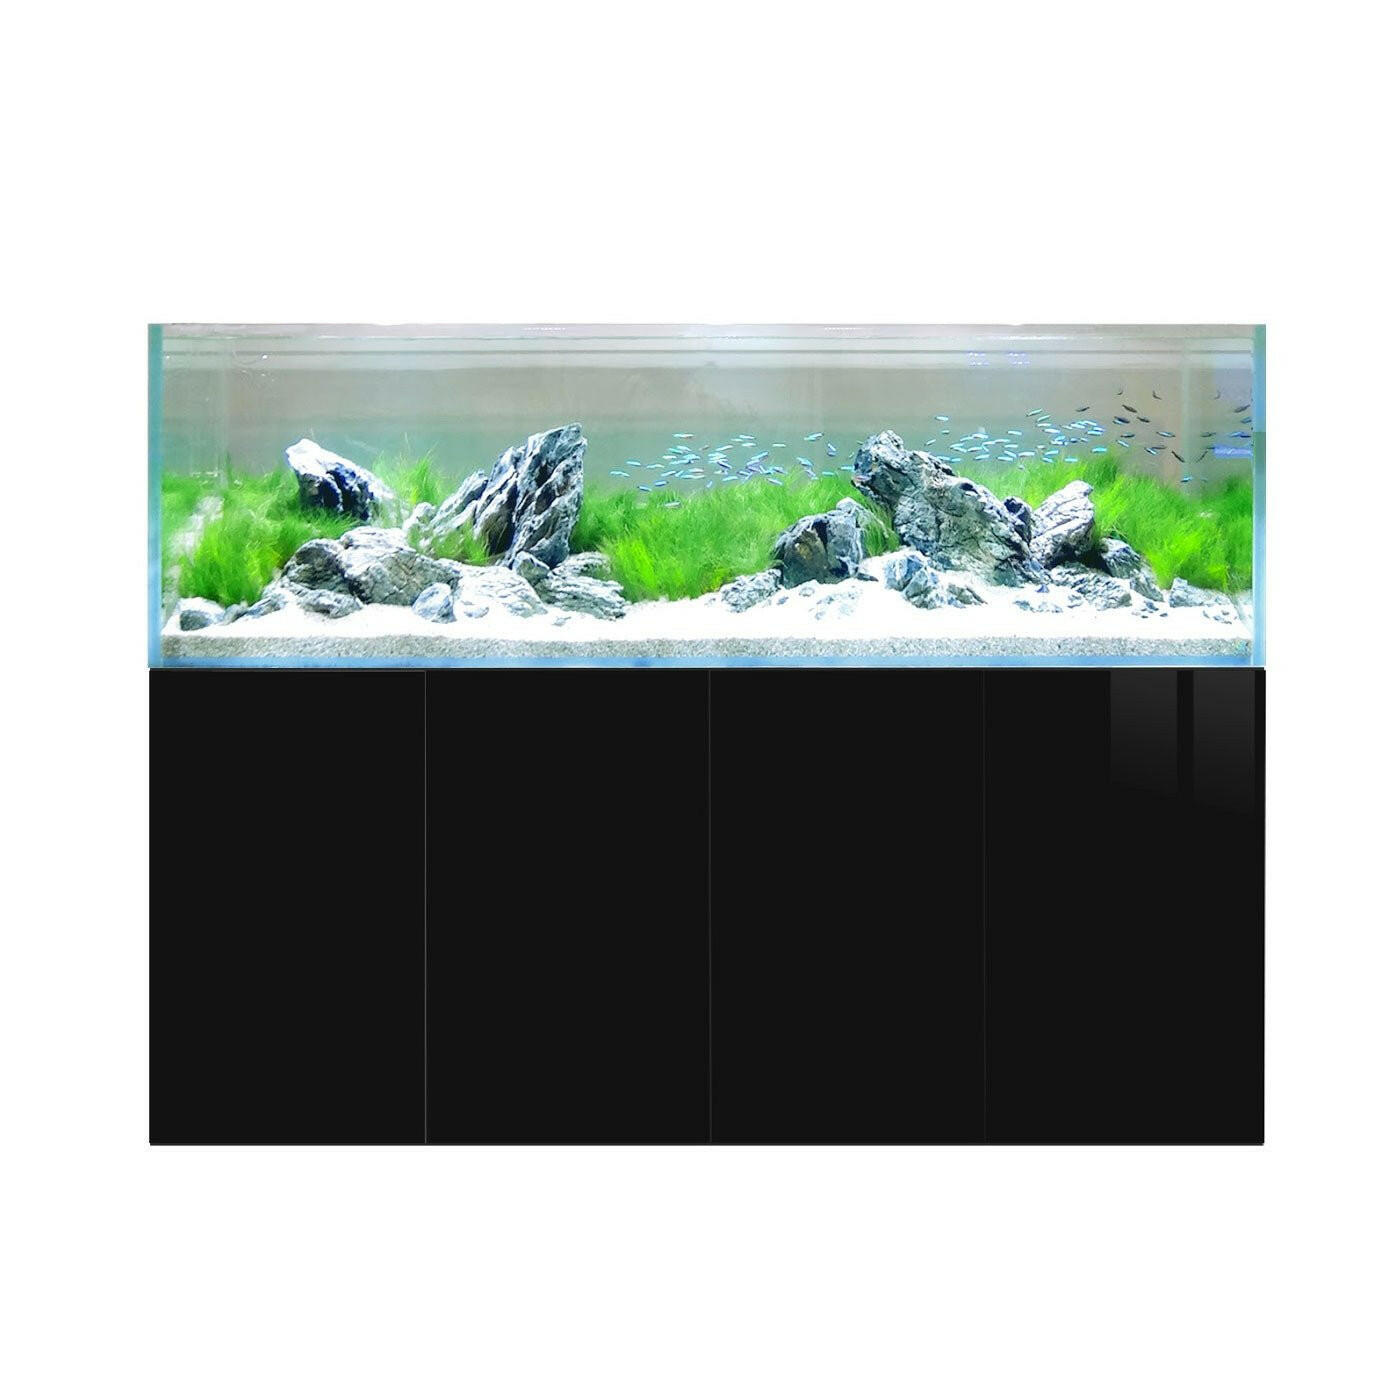 D-D Aqua-Pro Aquascaper 1800 - Carbon Oak - AquaFrame Cabinet - Charterhouse Aquatics